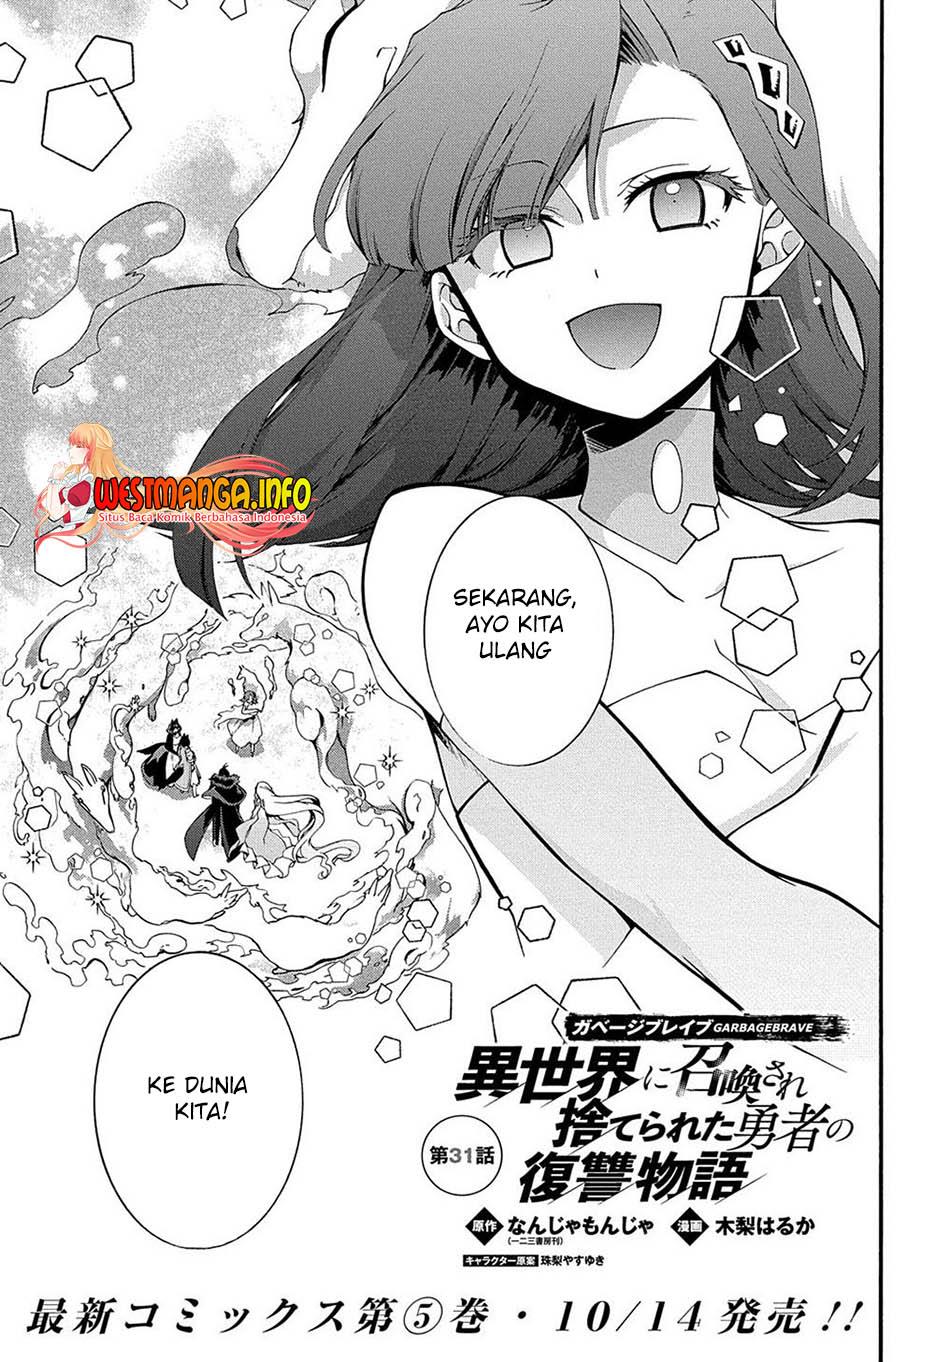 KomiknGarbage Brave: Isekai ni Shoukan Sare Suterareta Yuusha no Fukushuu Monogatari Chapter 31